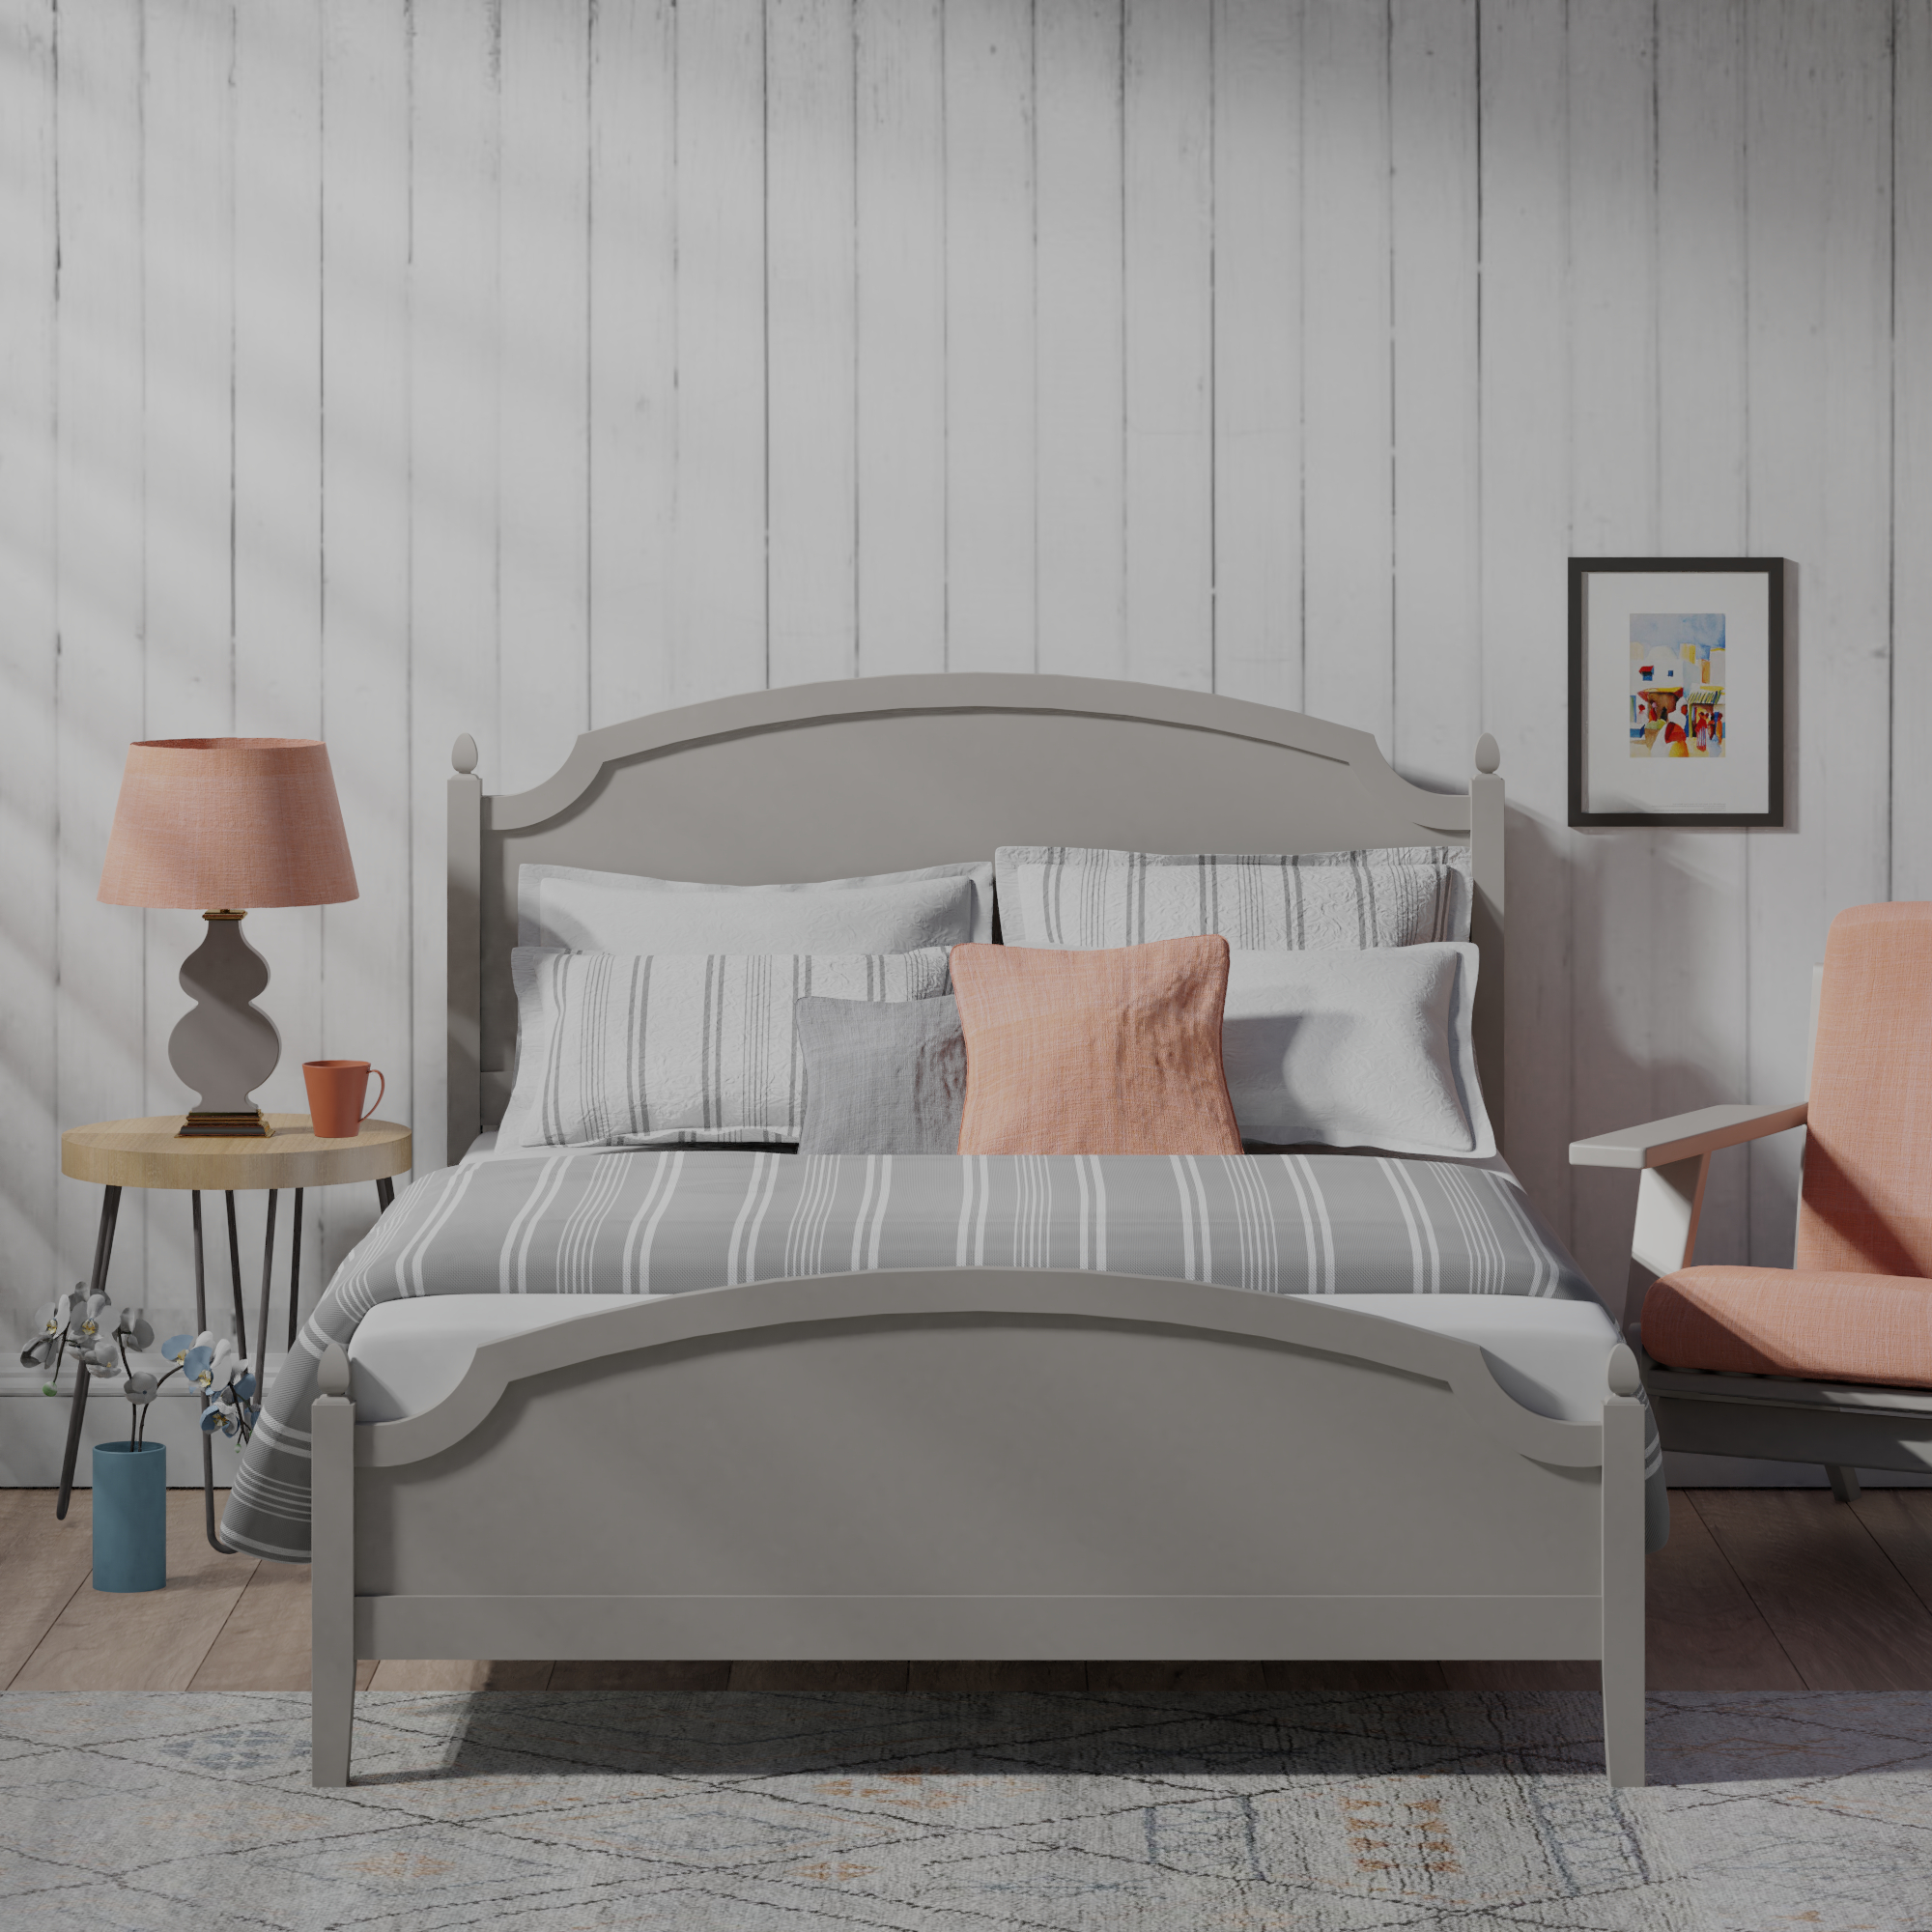 Kipling wooden bed - Image 3